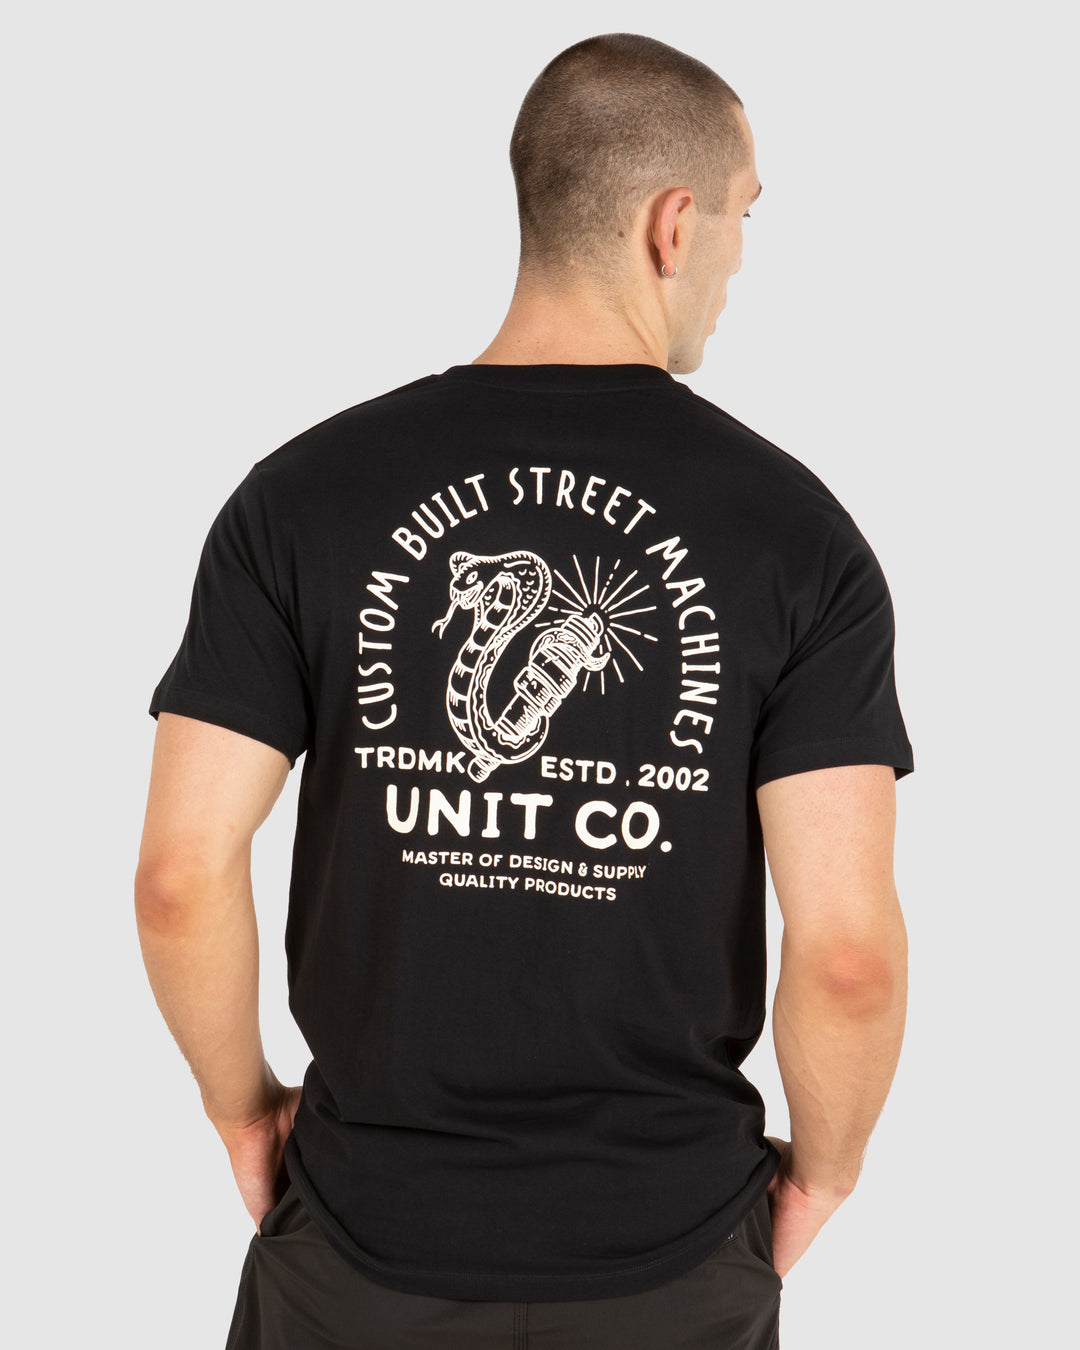 UNIT Pulse Mens T-Shirt